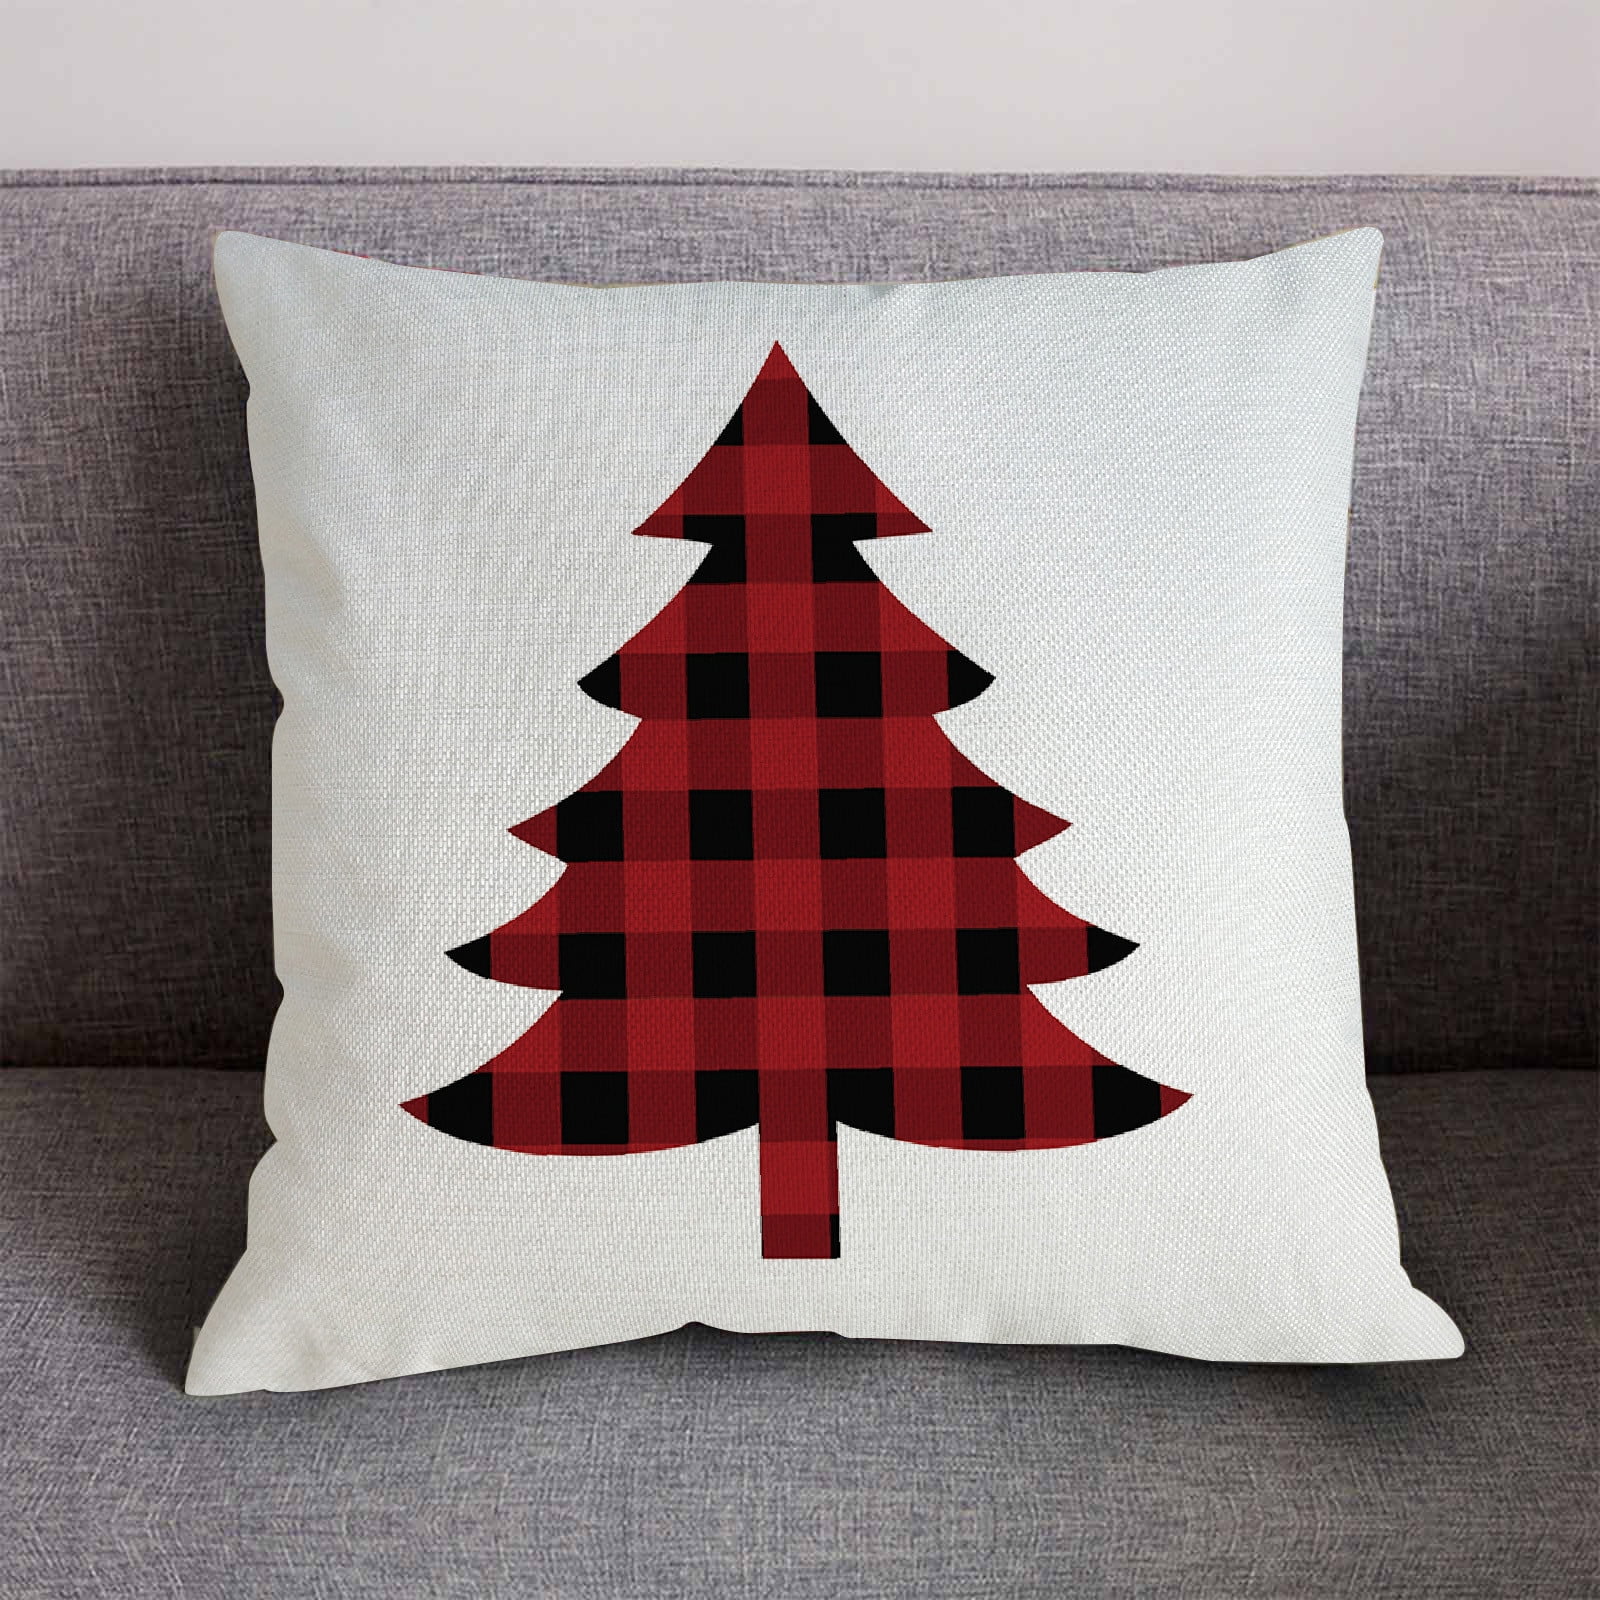 Christmas Cotton linen pillows case throw cushion cover for sofa Home Decor 